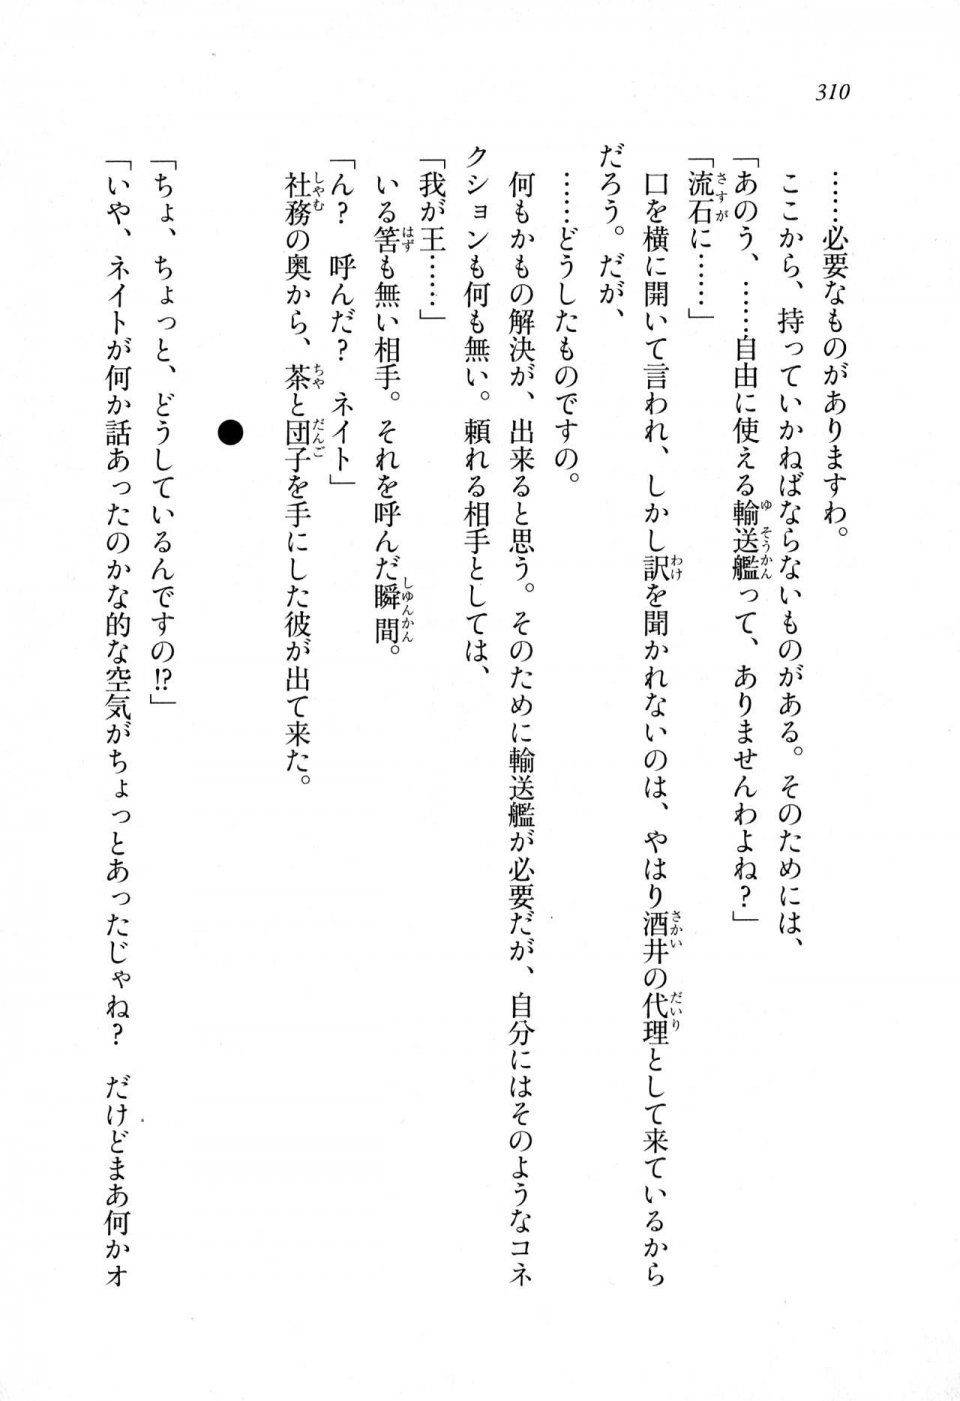 Kyoukai Senjou no Horizon LN Sidestory Vol 1 - Photo #308